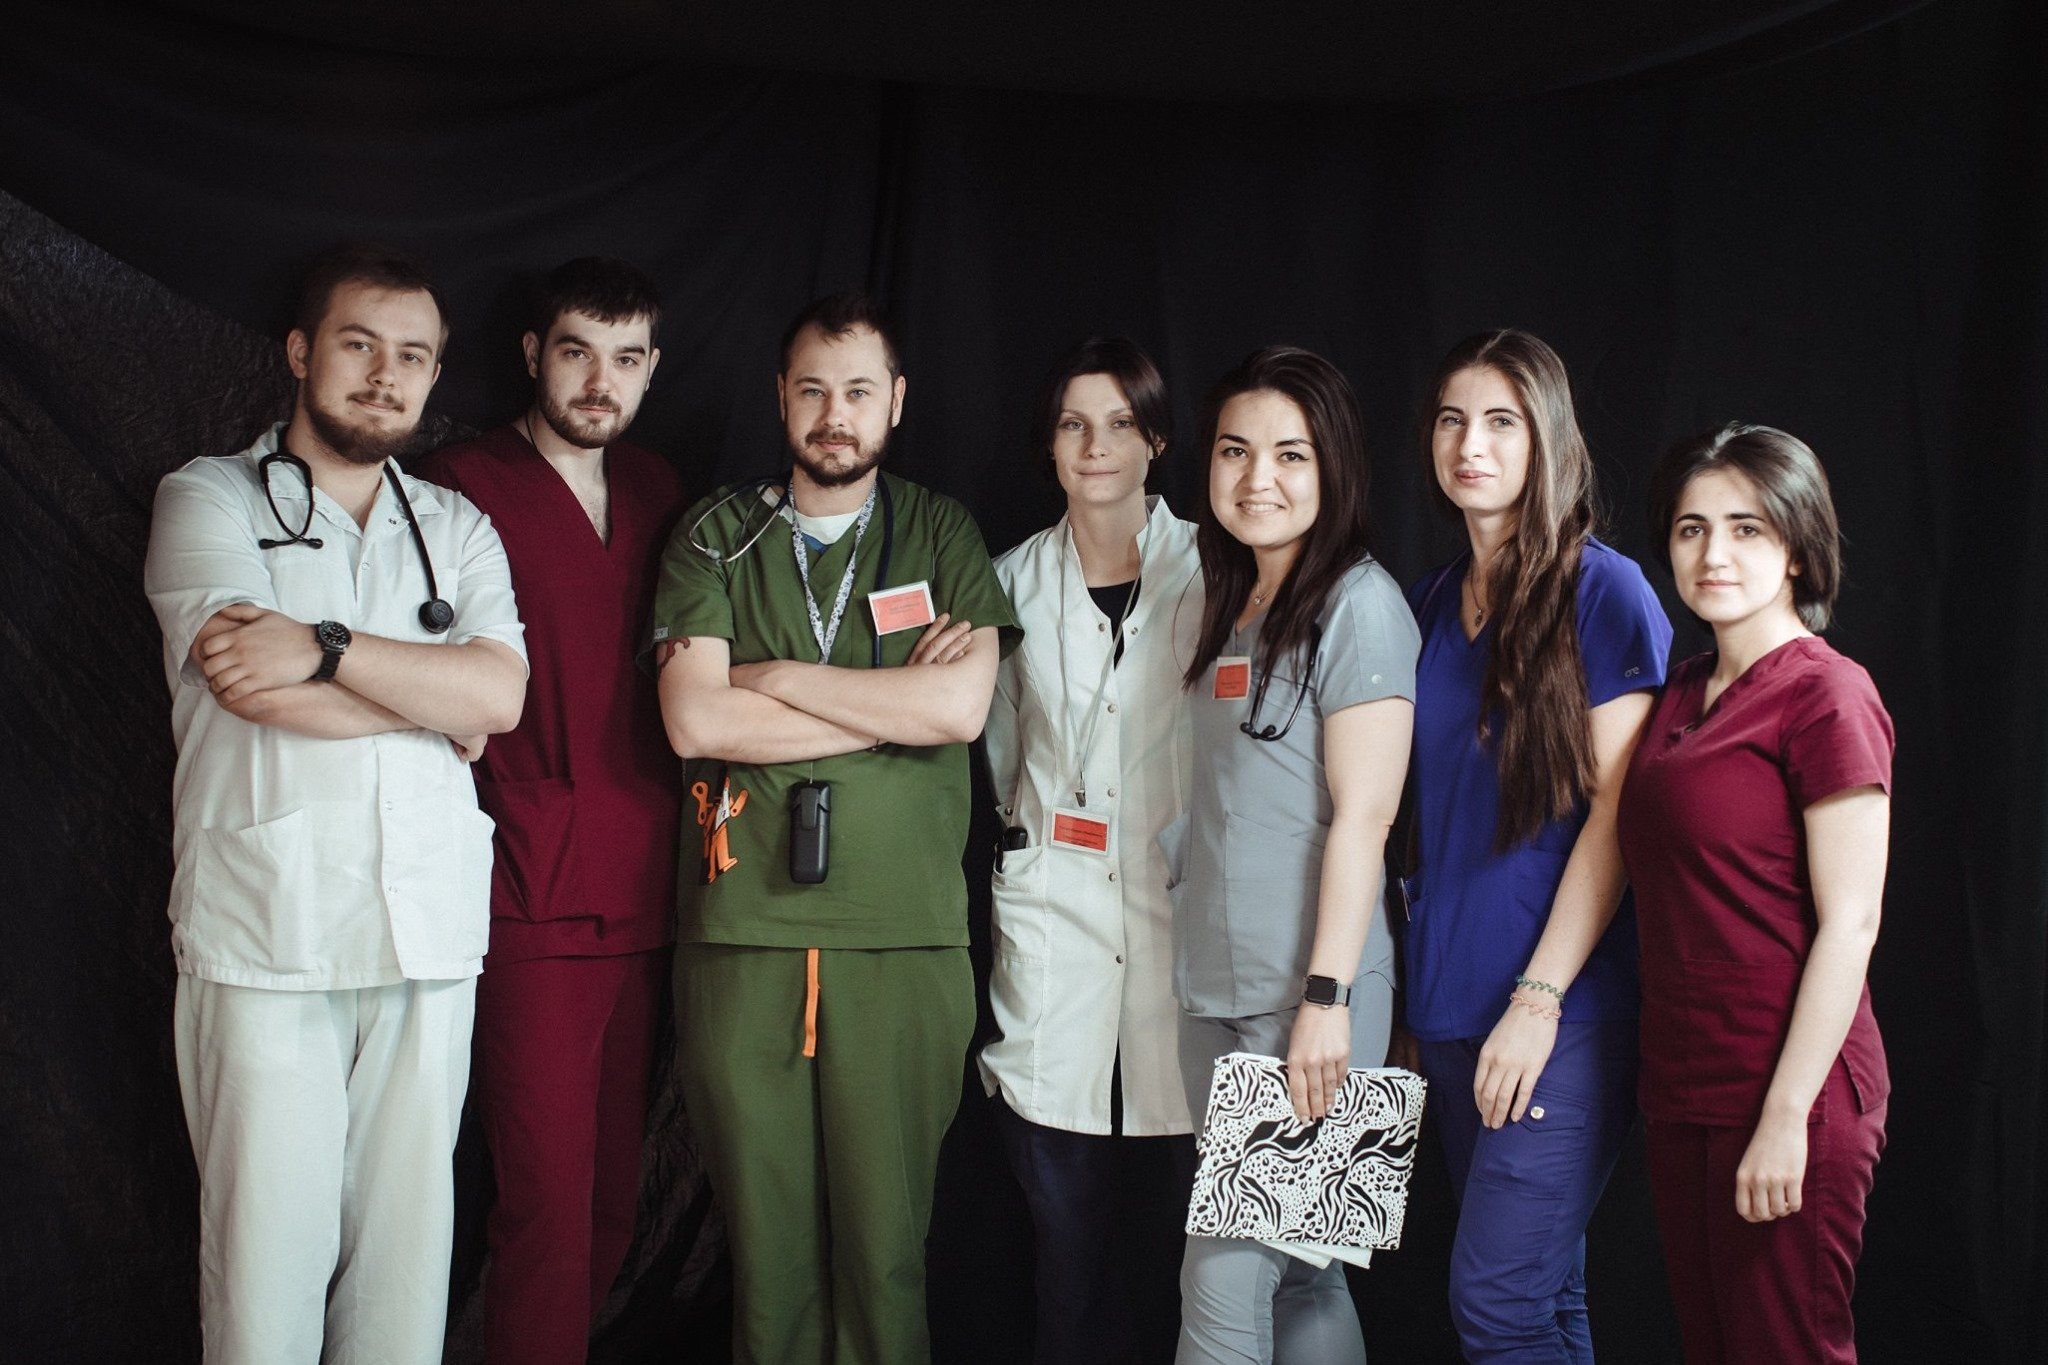 "Сверхлюди": опубликованы фото медиков-героев борющихся с эпидемией